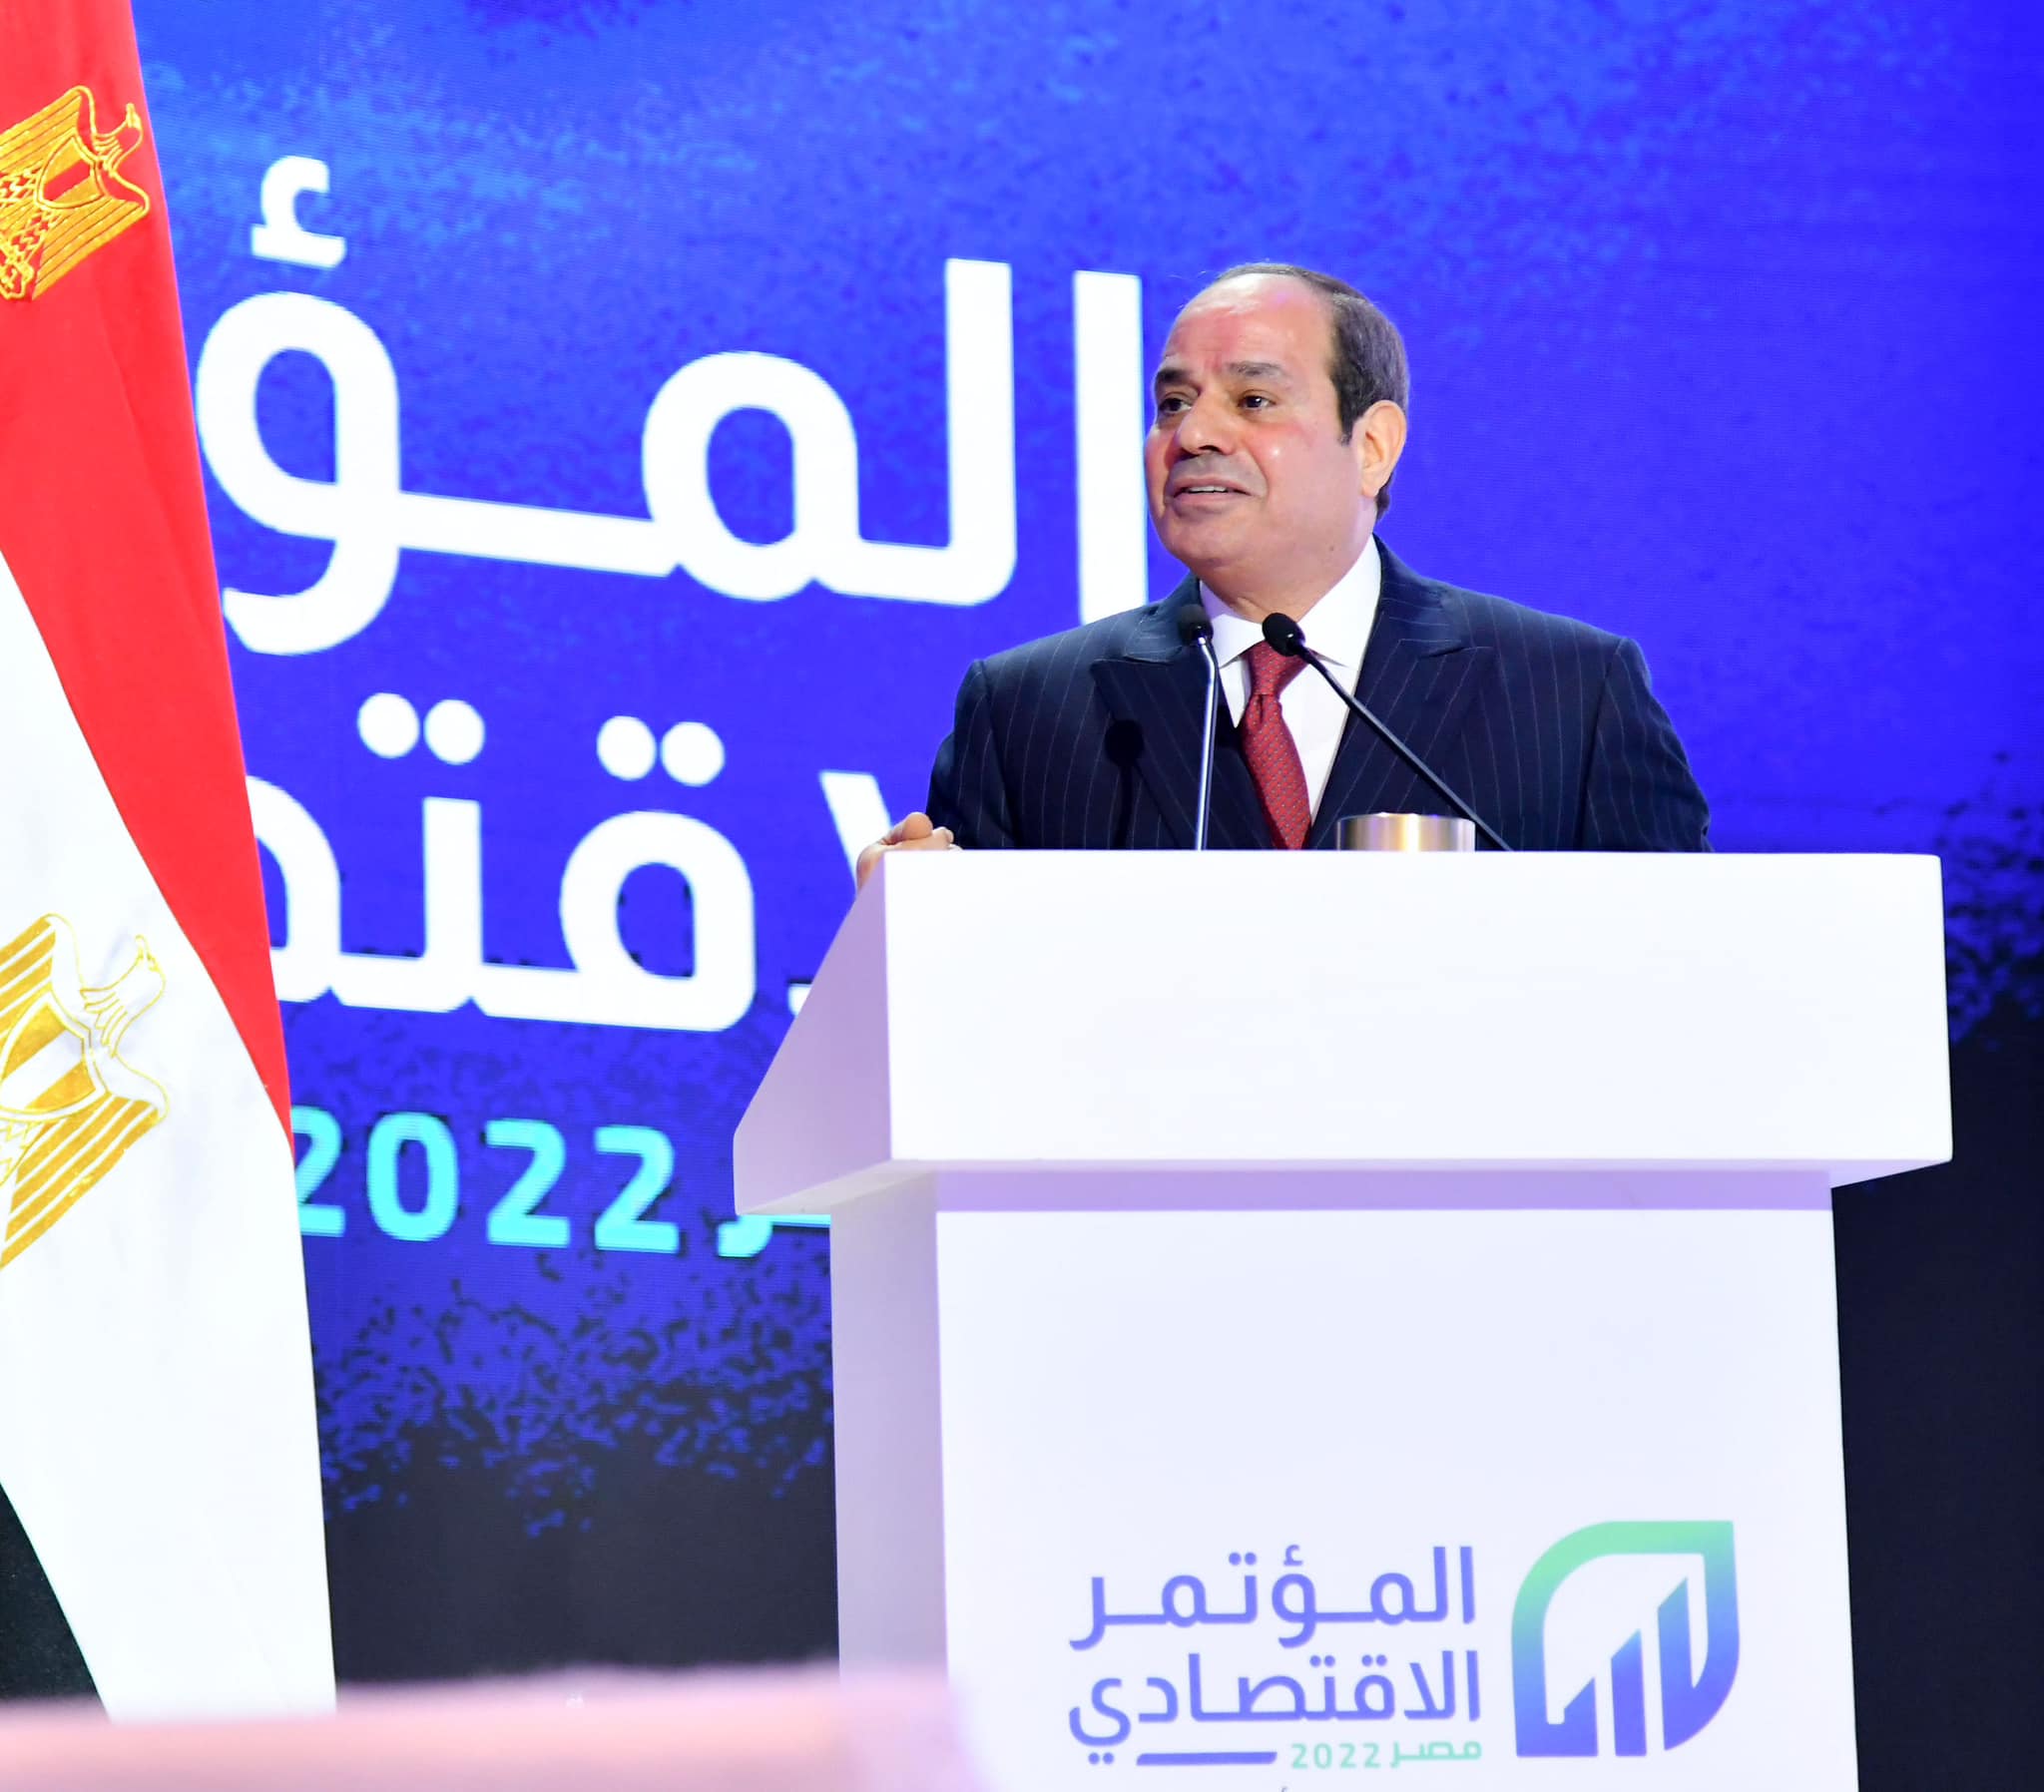 الرئيس السيسي في المؤتمر الاقتصادي (مصر 2022)